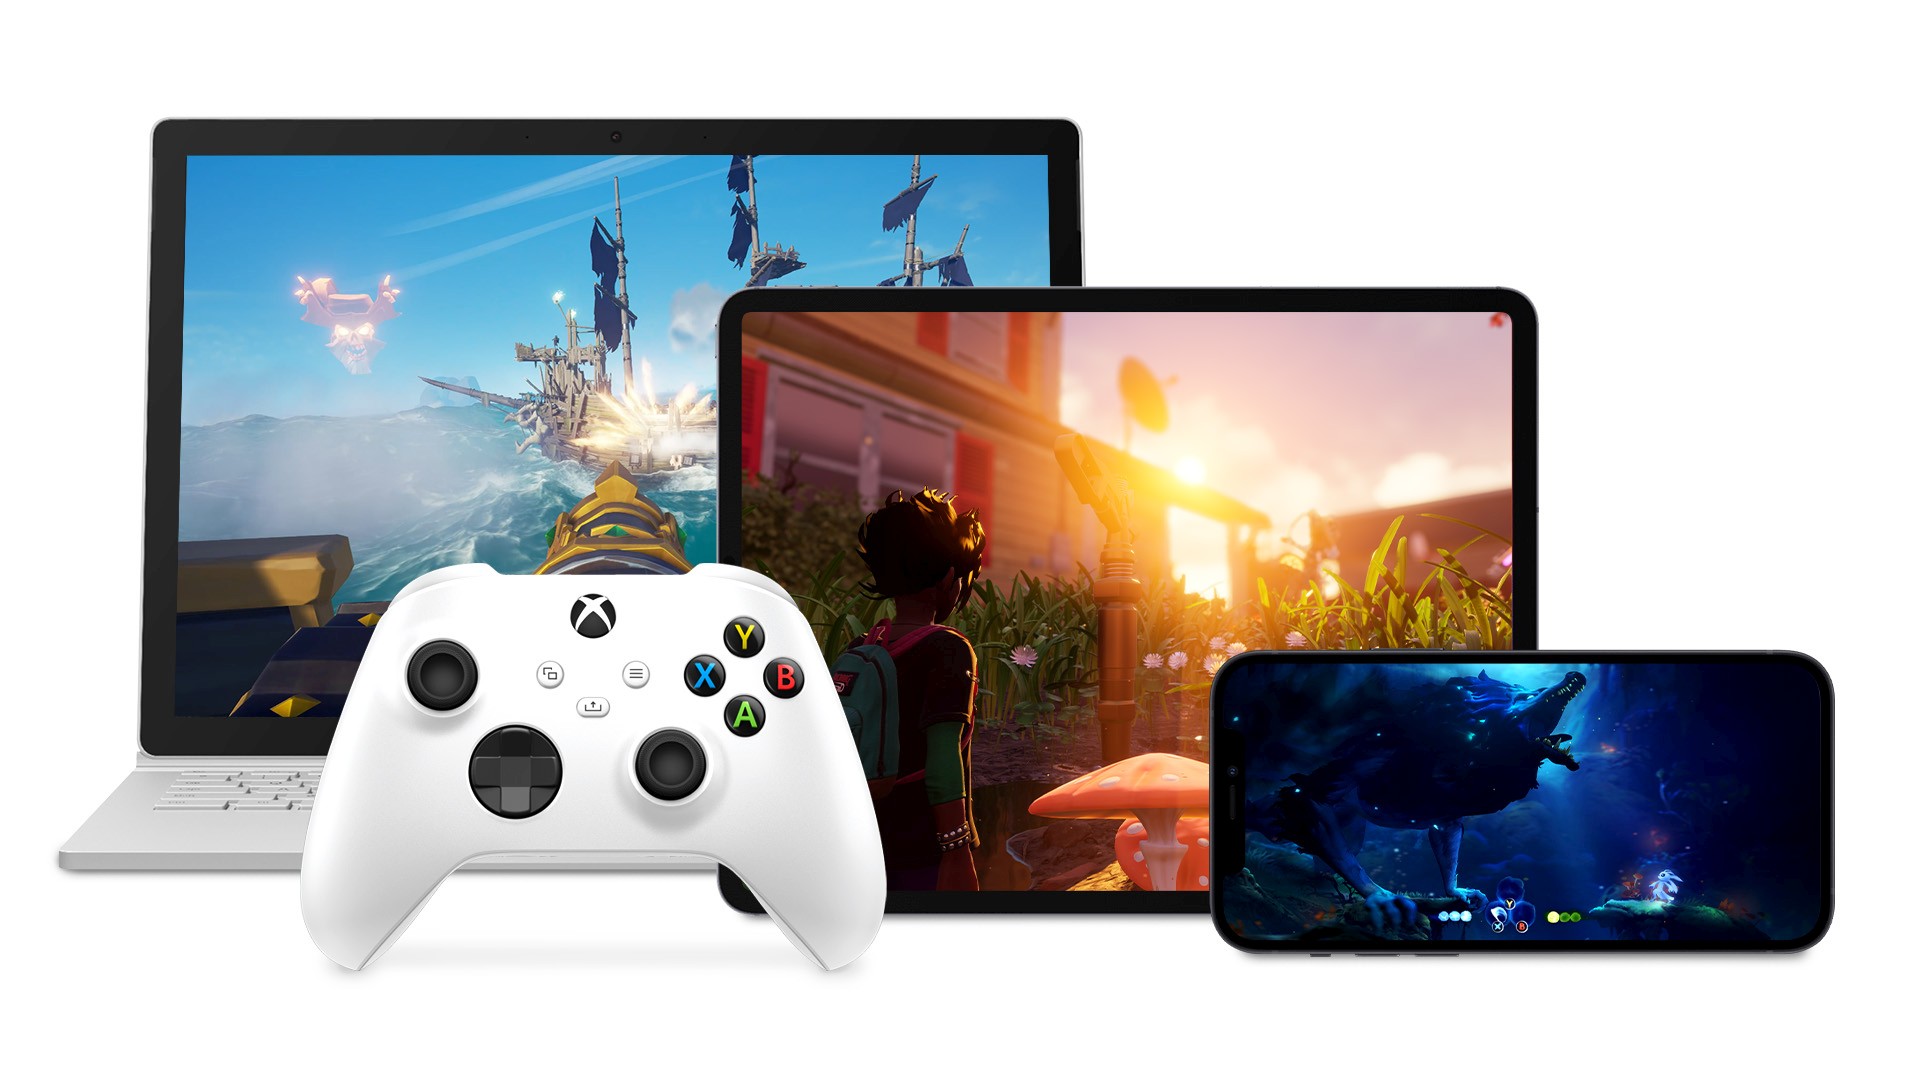 🎮 Xbox може безплатно давати доступ до хмарного сервісу за перегляд реклами